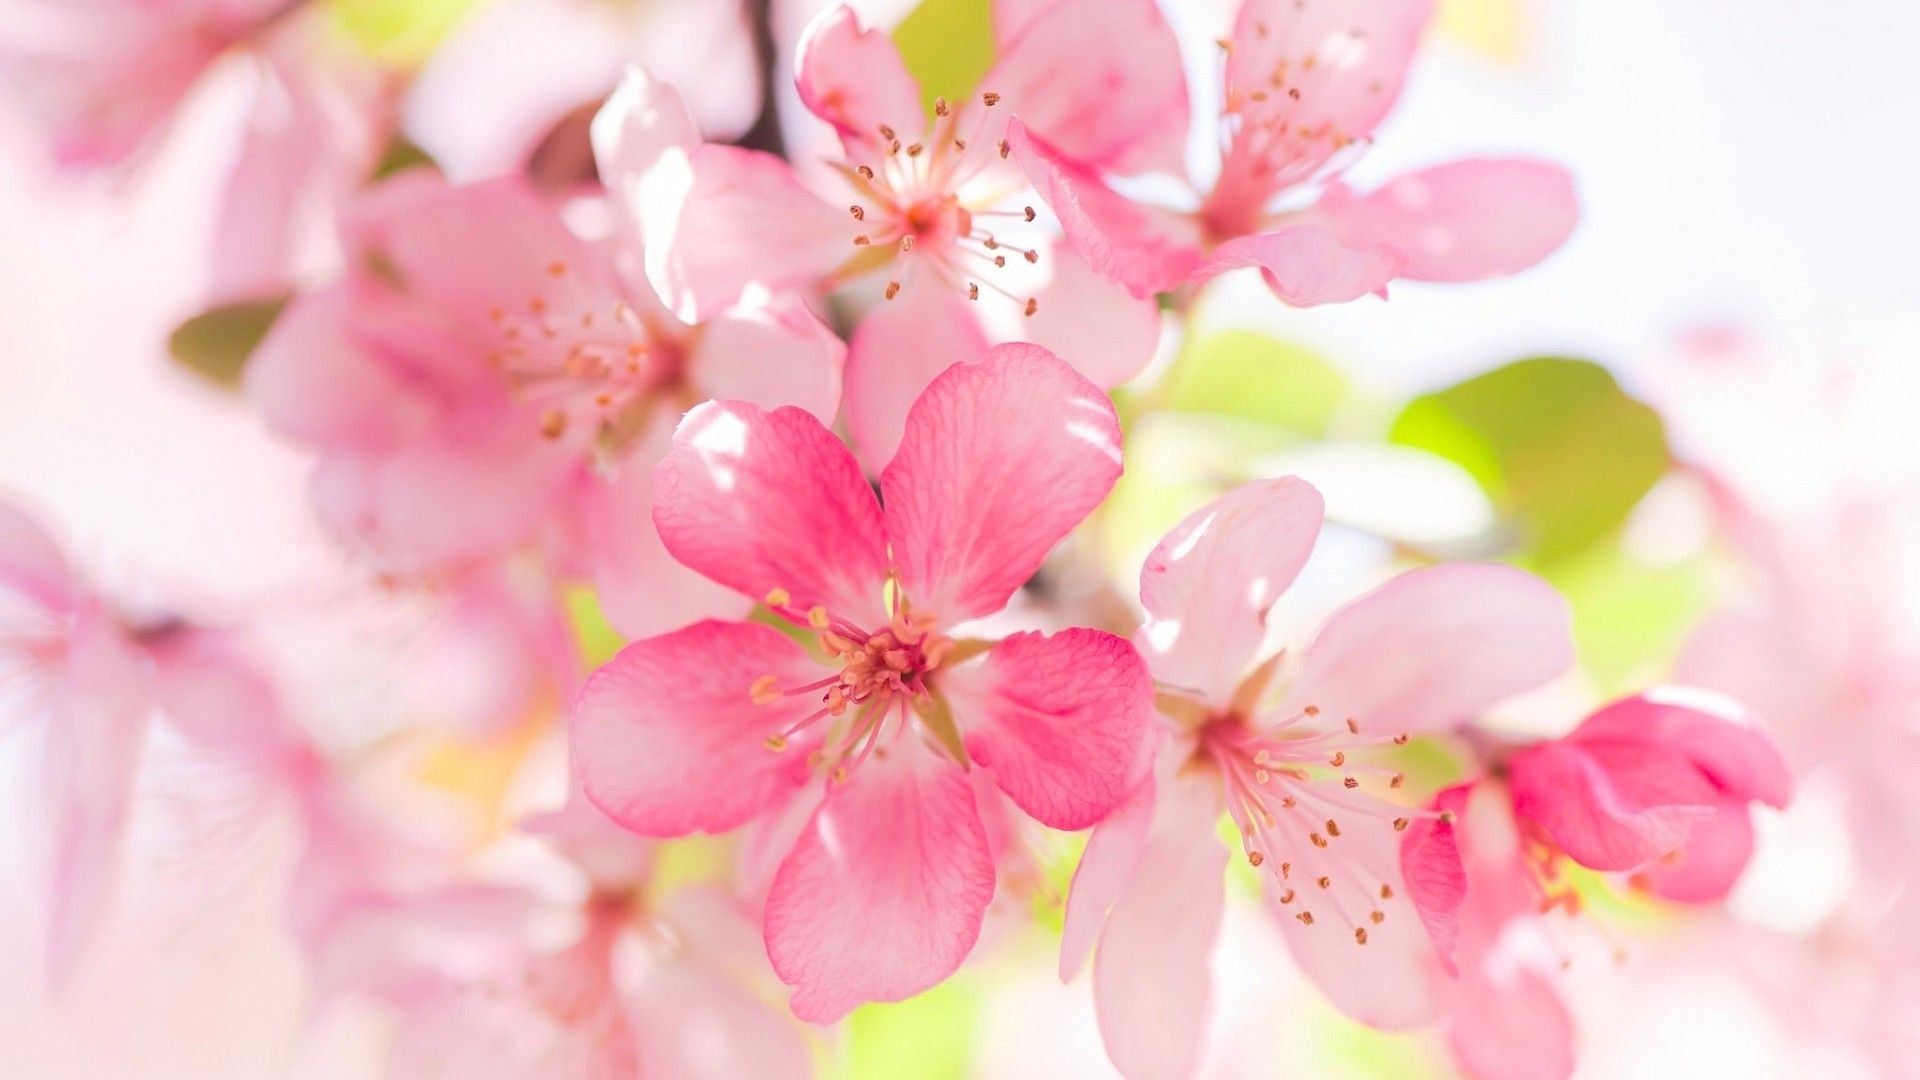 عکسی زیبا و دیدنی از شکوفه های صورتی سیب برای هایلایت 